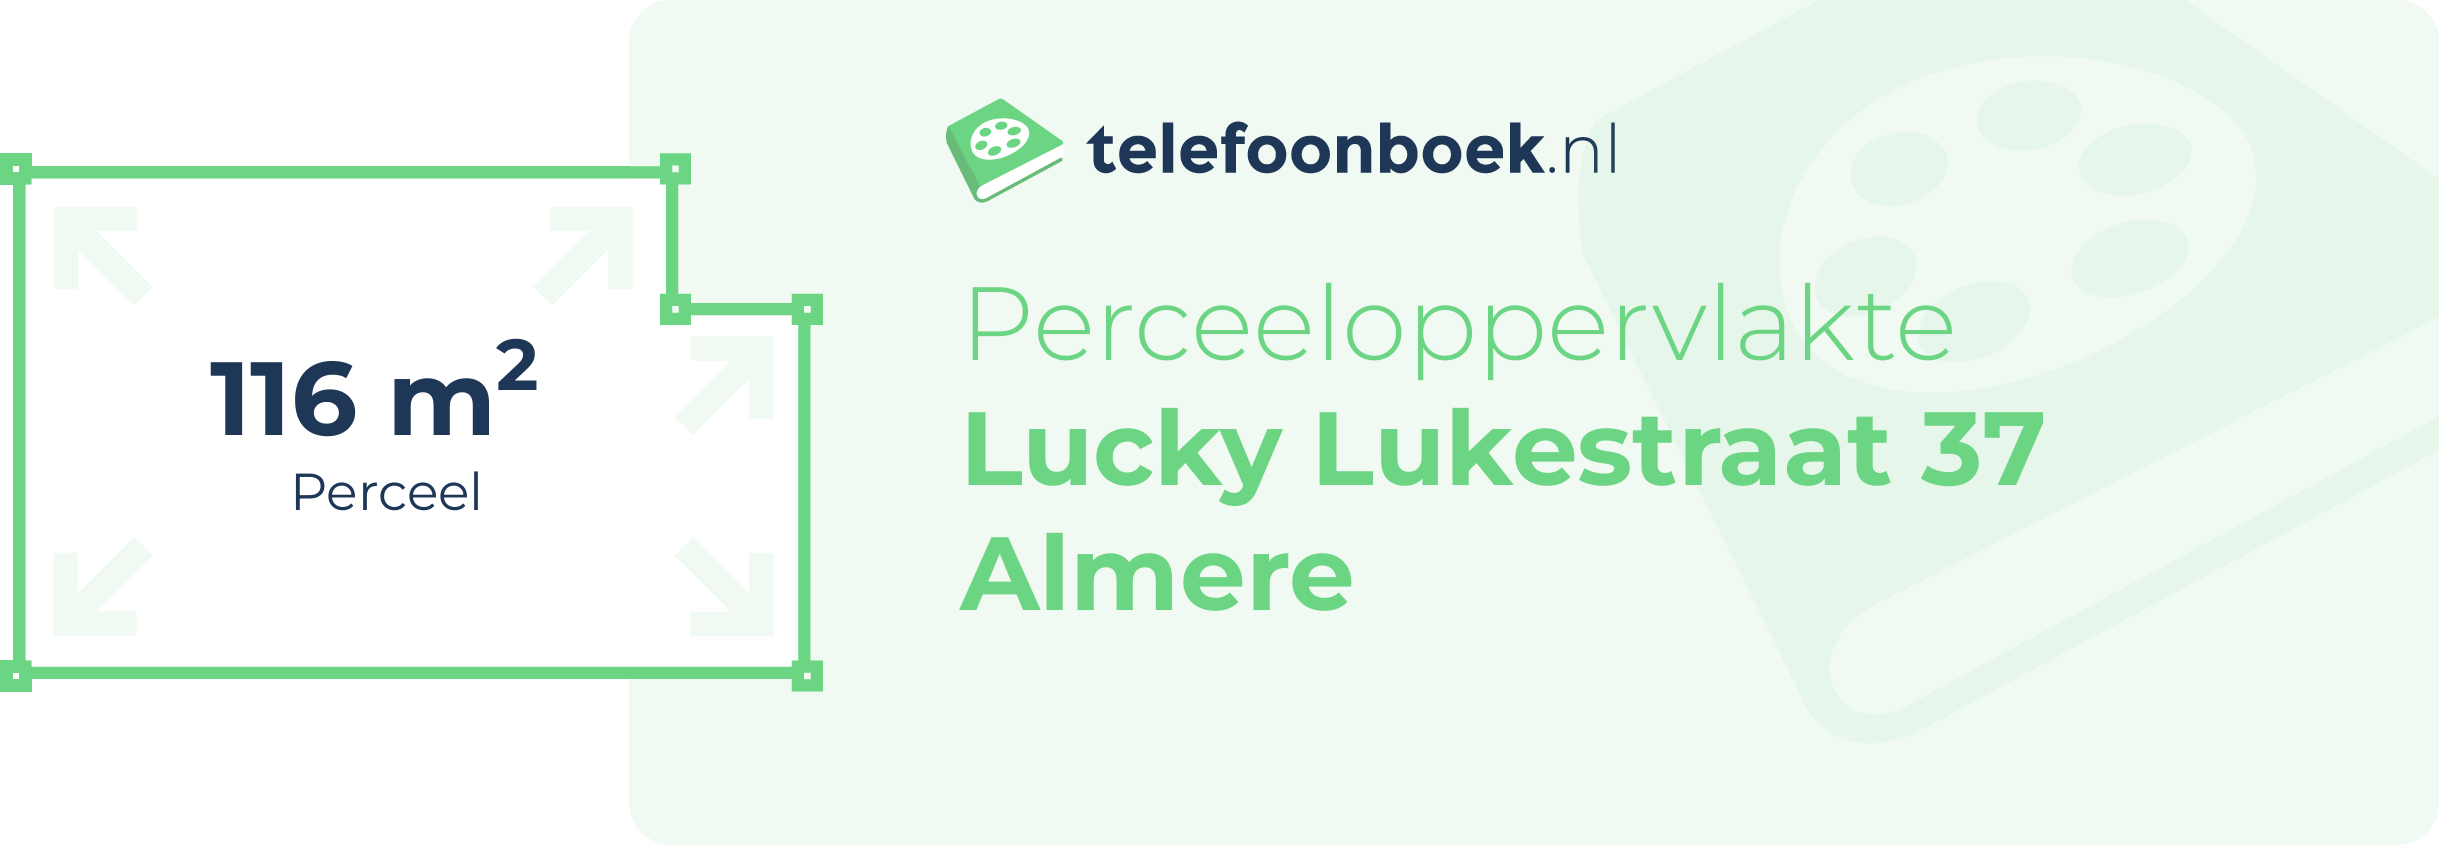 Perceeloppervlakte Lucky Lukestraat 37 Almere